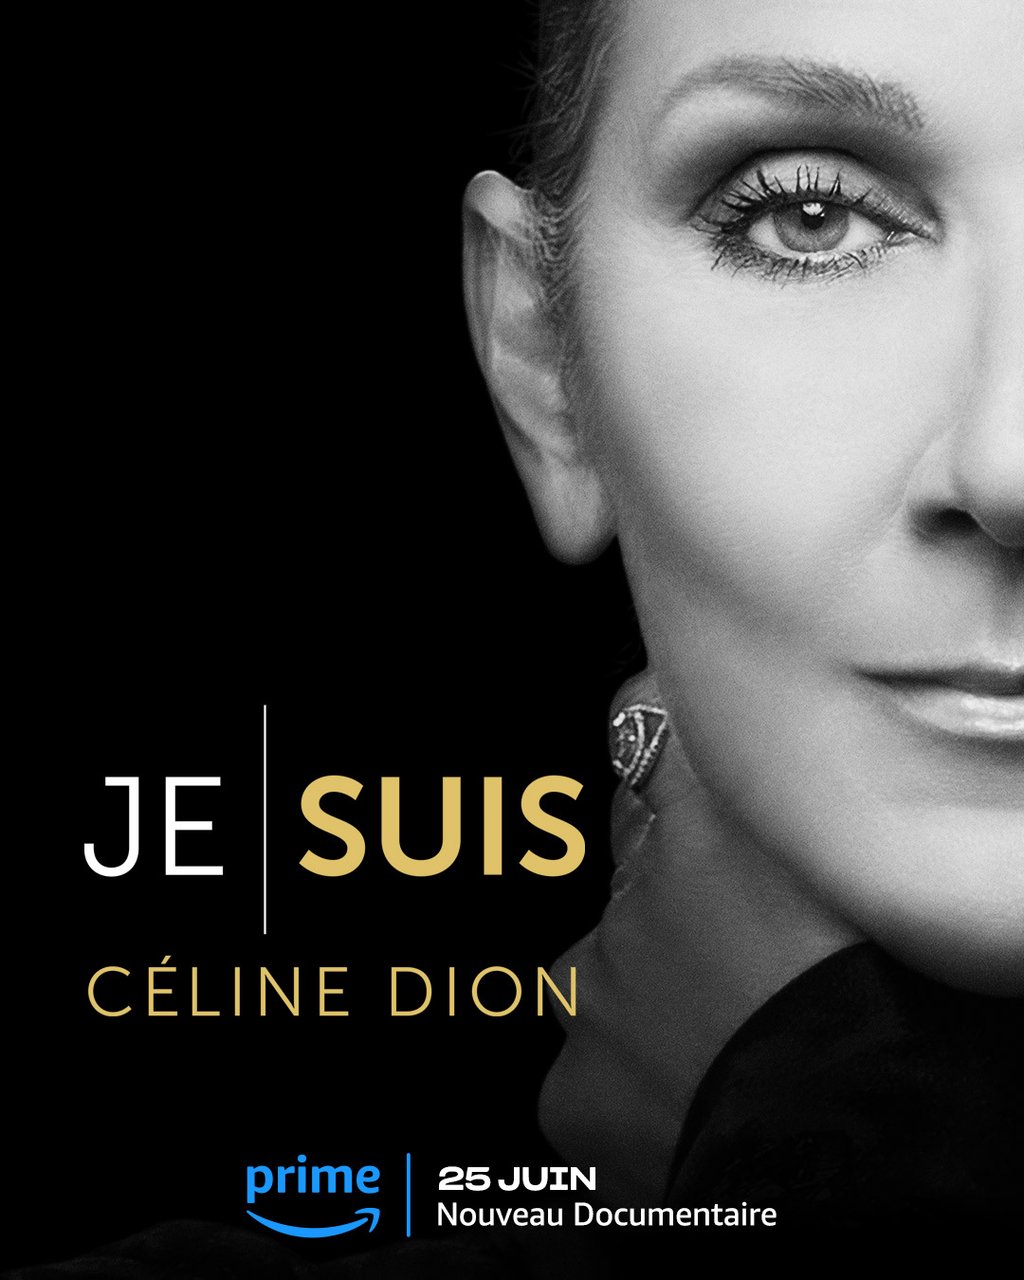 TVA annonce une émission spéciale avec Céline Dion et Jean-Philippe Dion